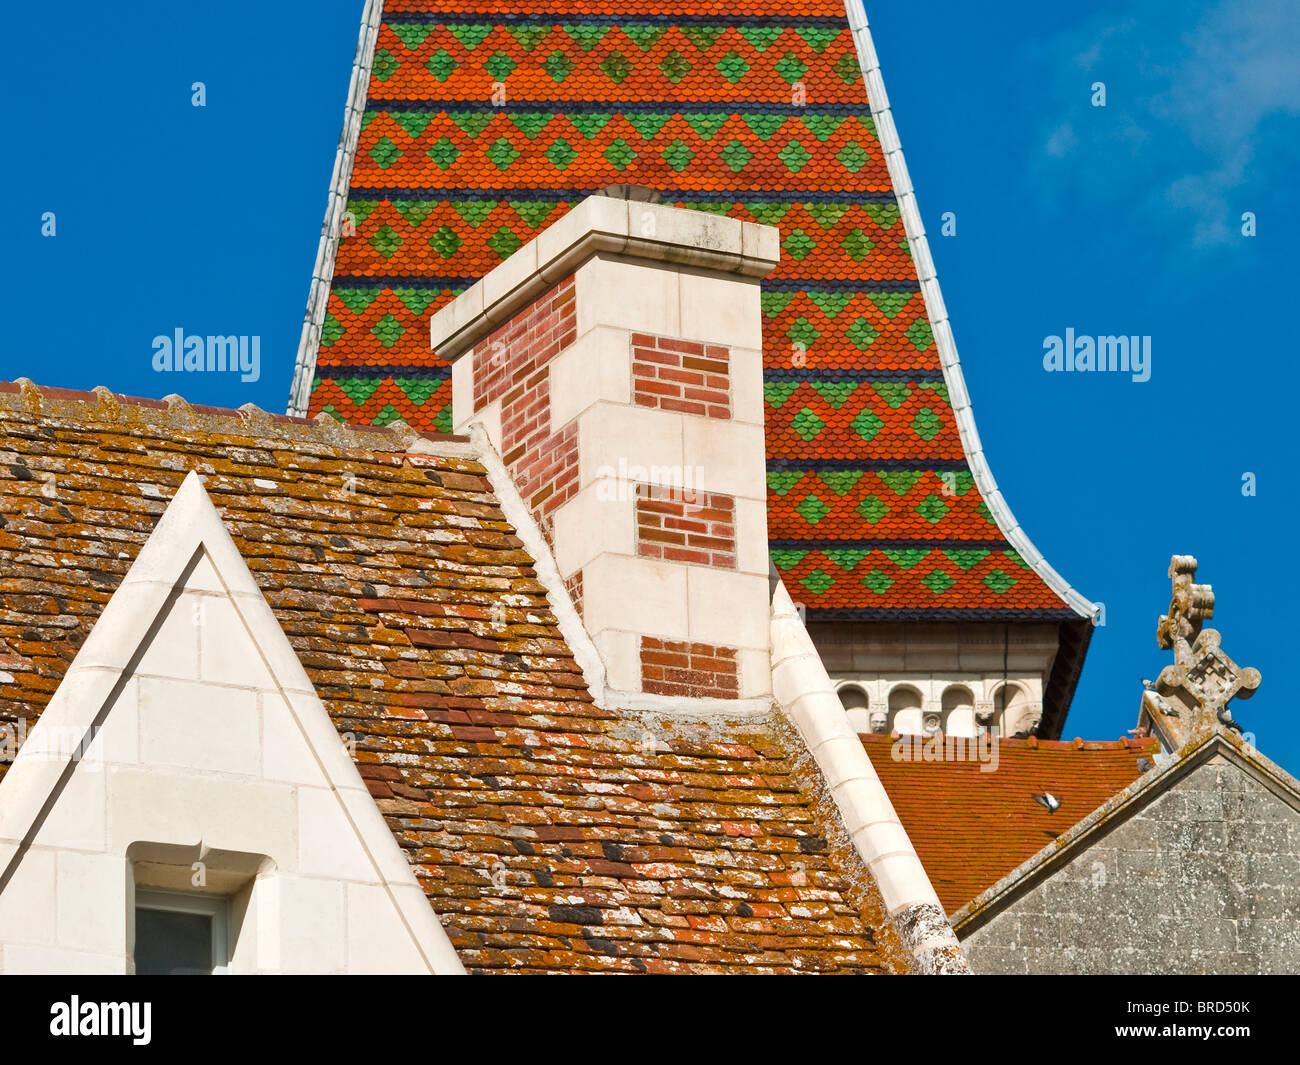 Alten Schornstein und dekorative, geplant und gefliesten Dächer - Frankreich. Stockfoto